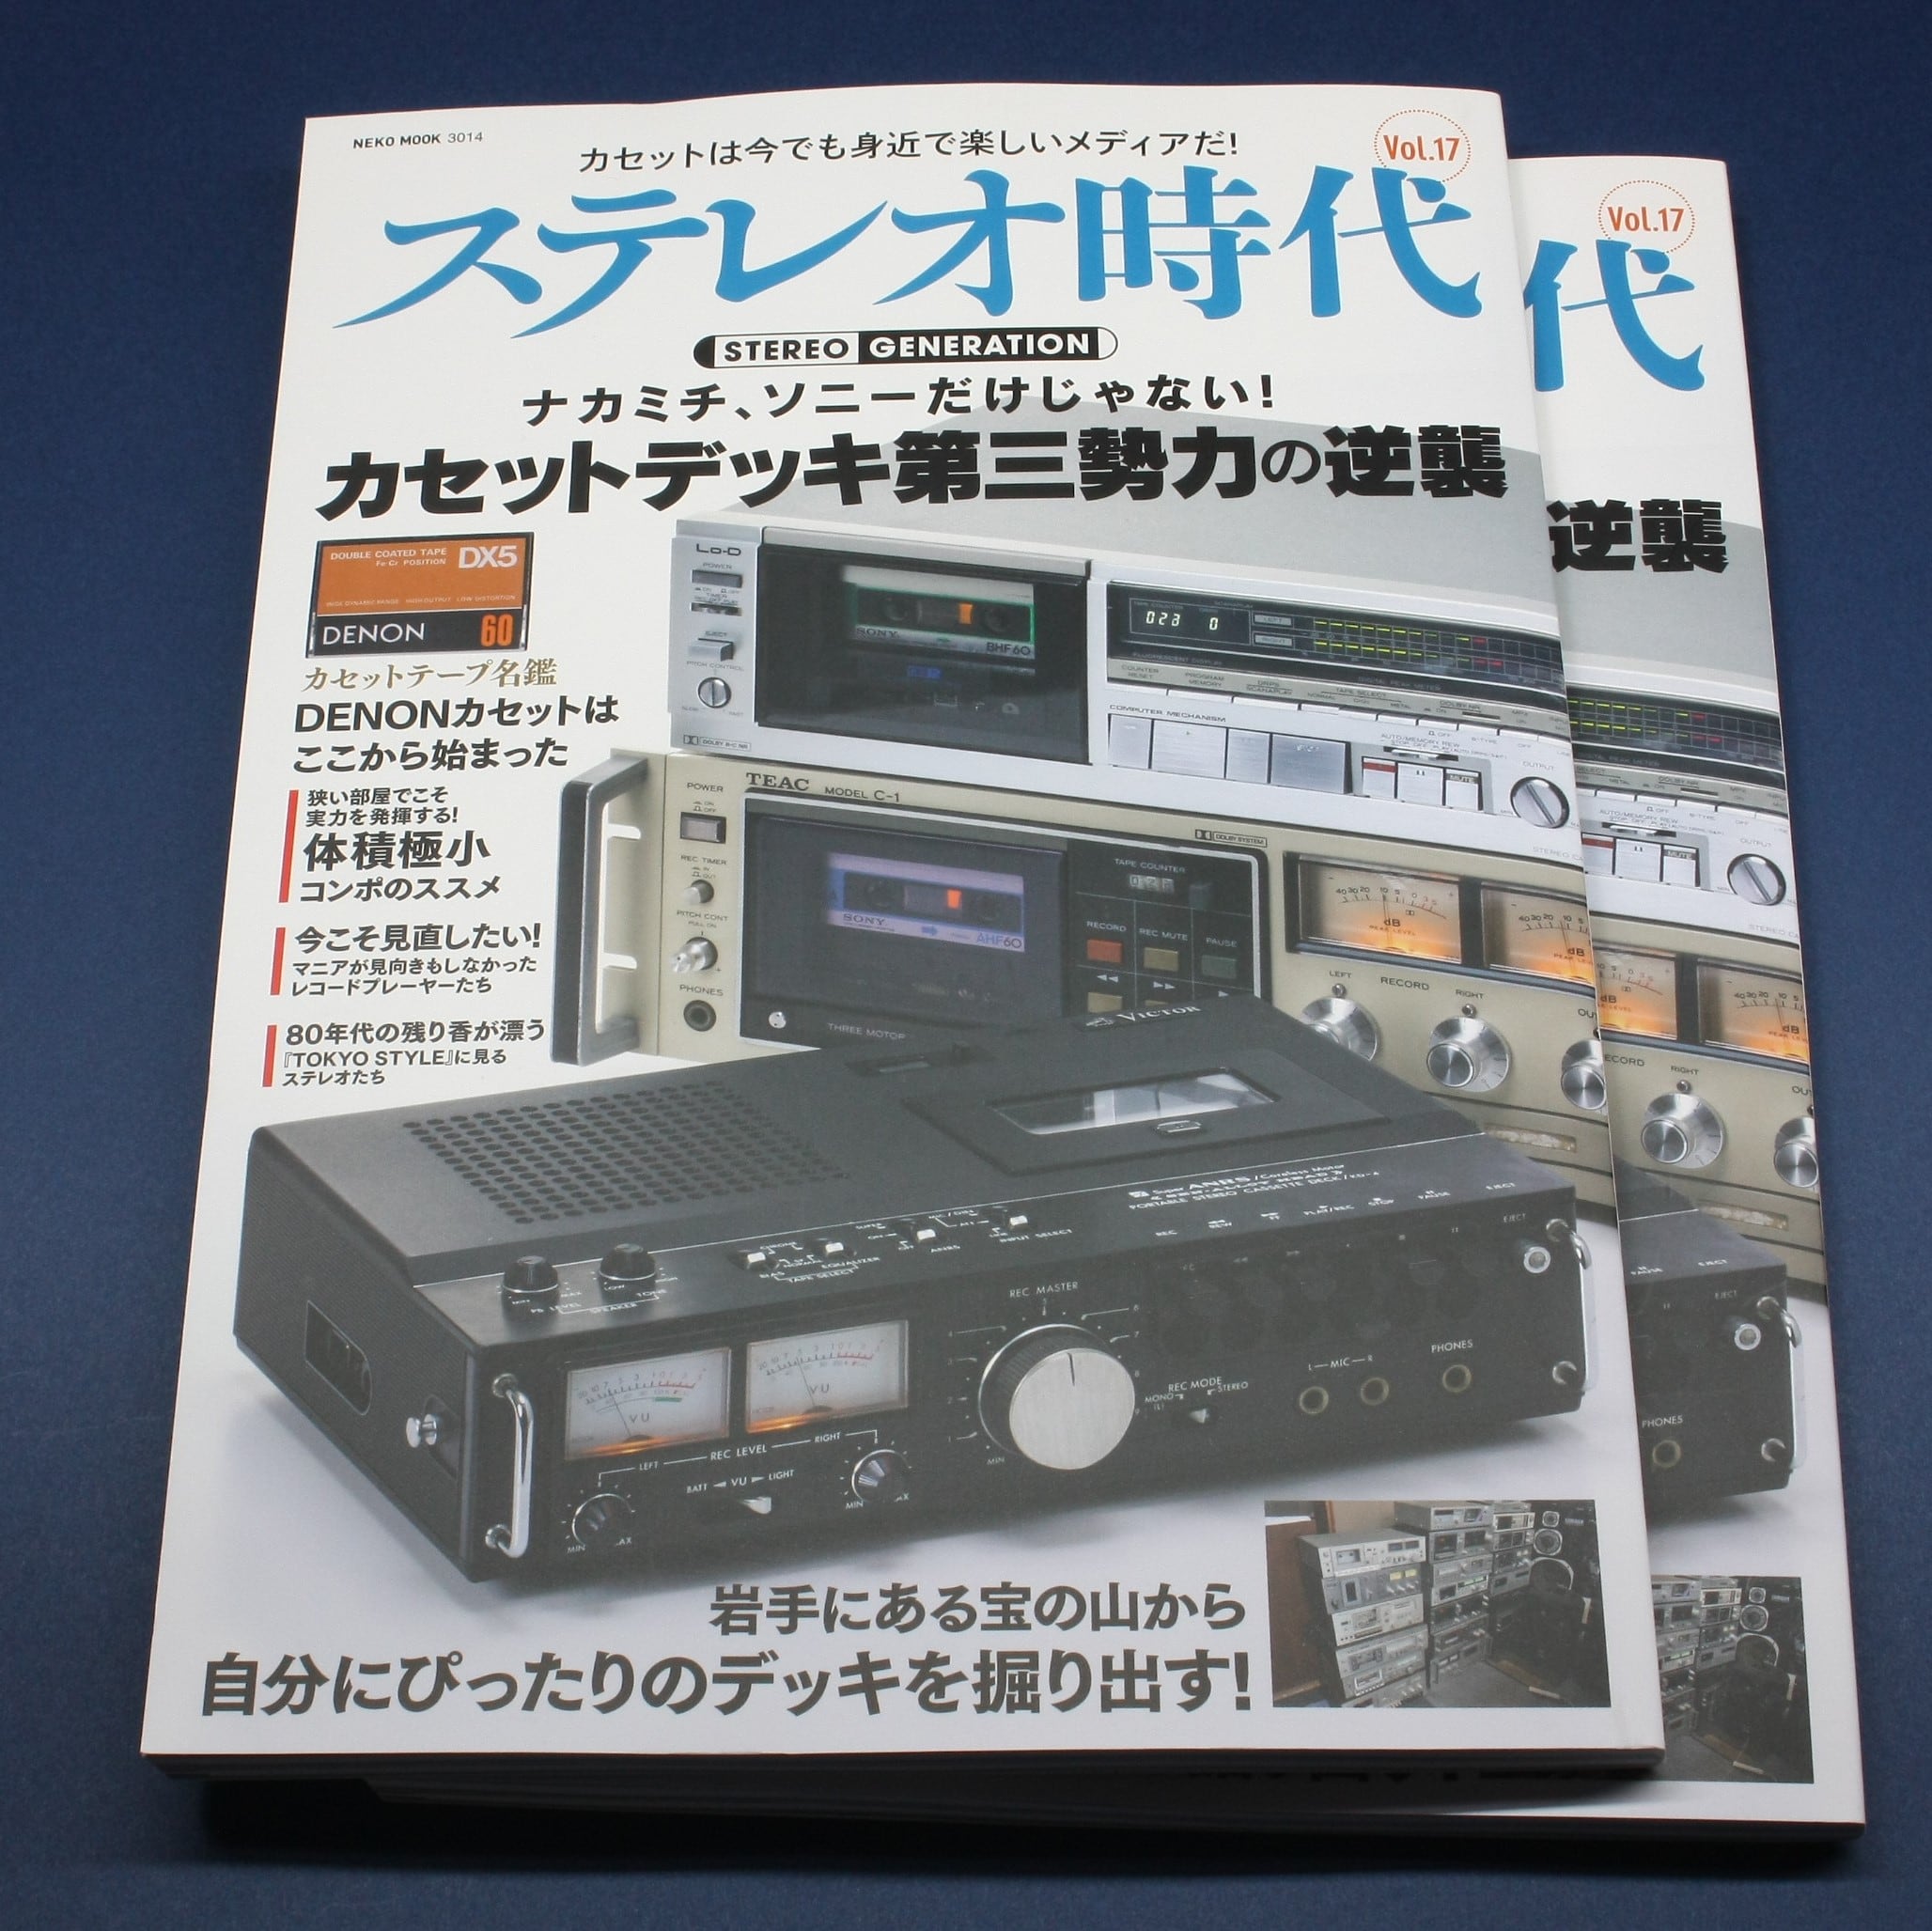 ステレオ時代にてレトロ調デザインのカセットテープをご